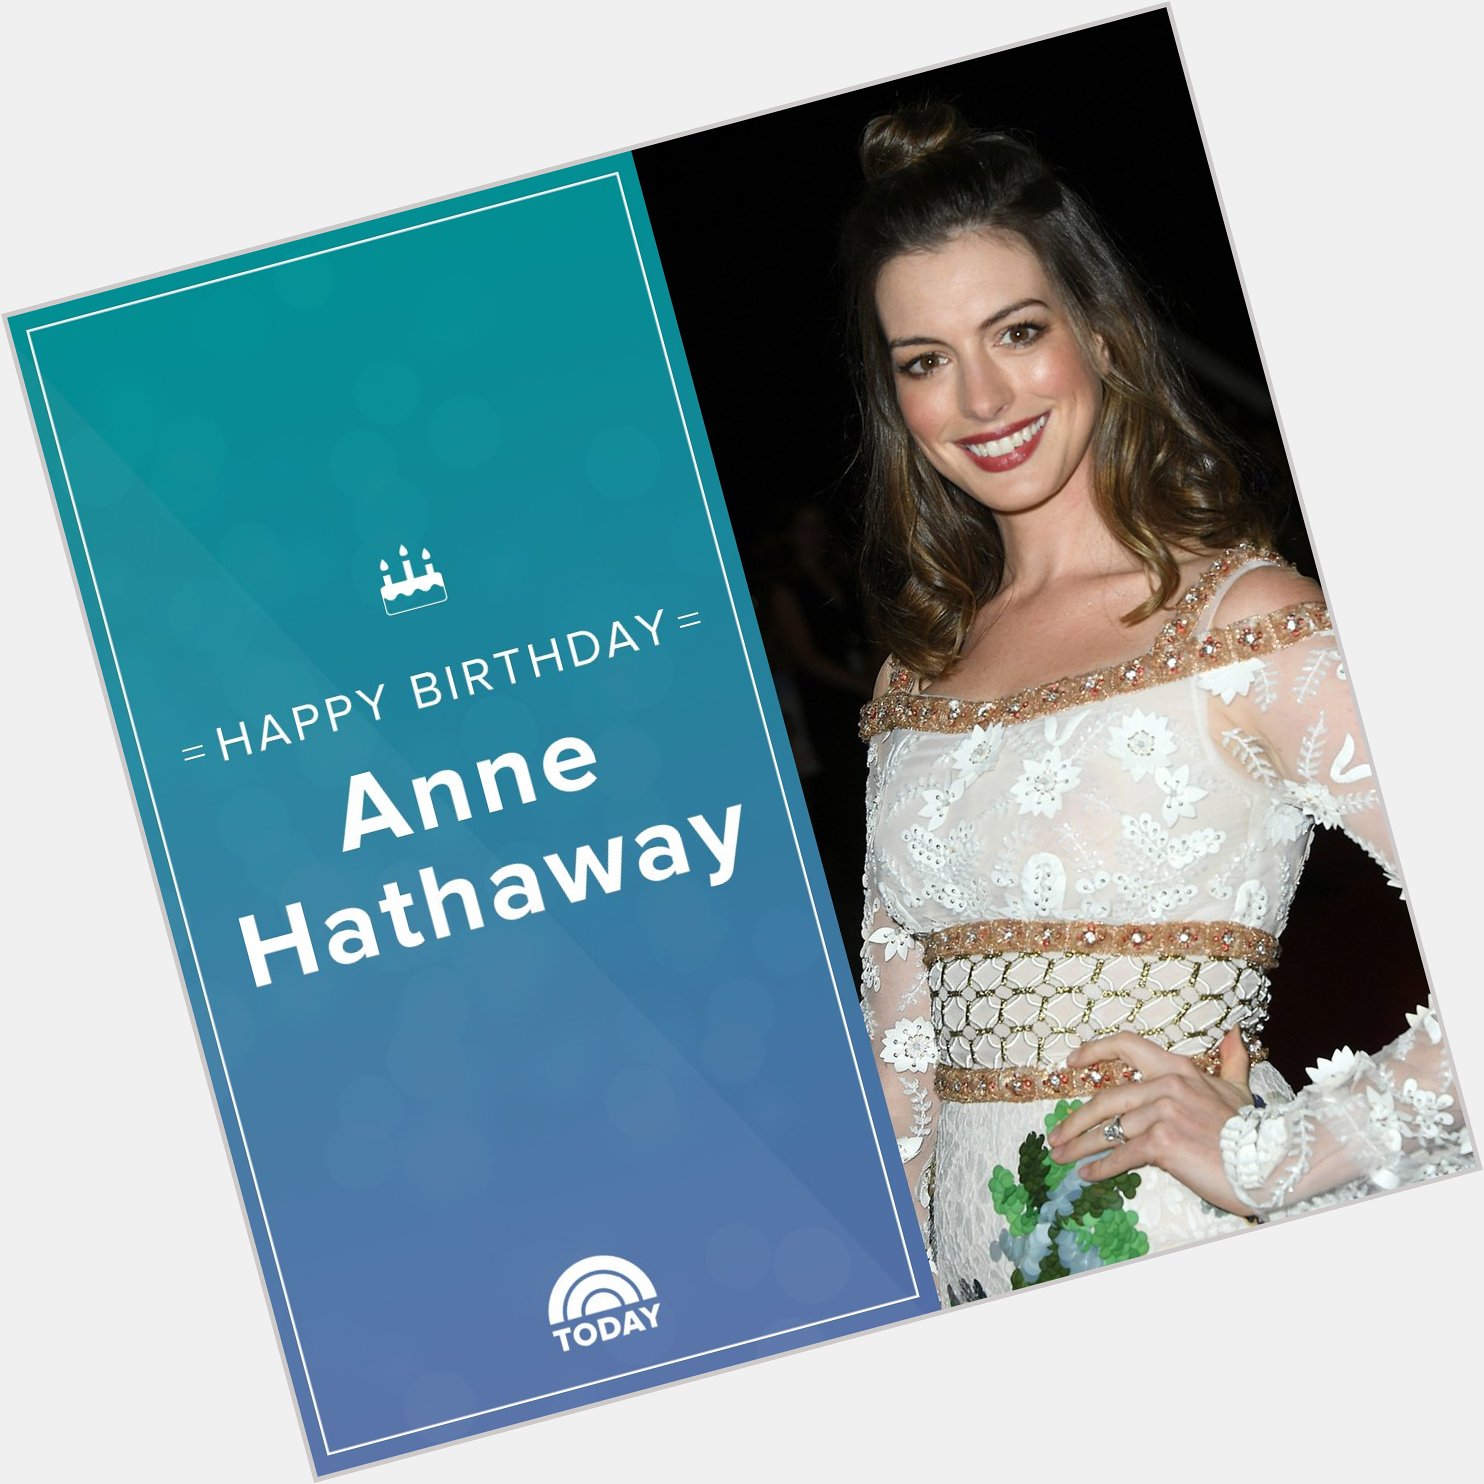 Happy 35th birthday, Anne Hathaway!  